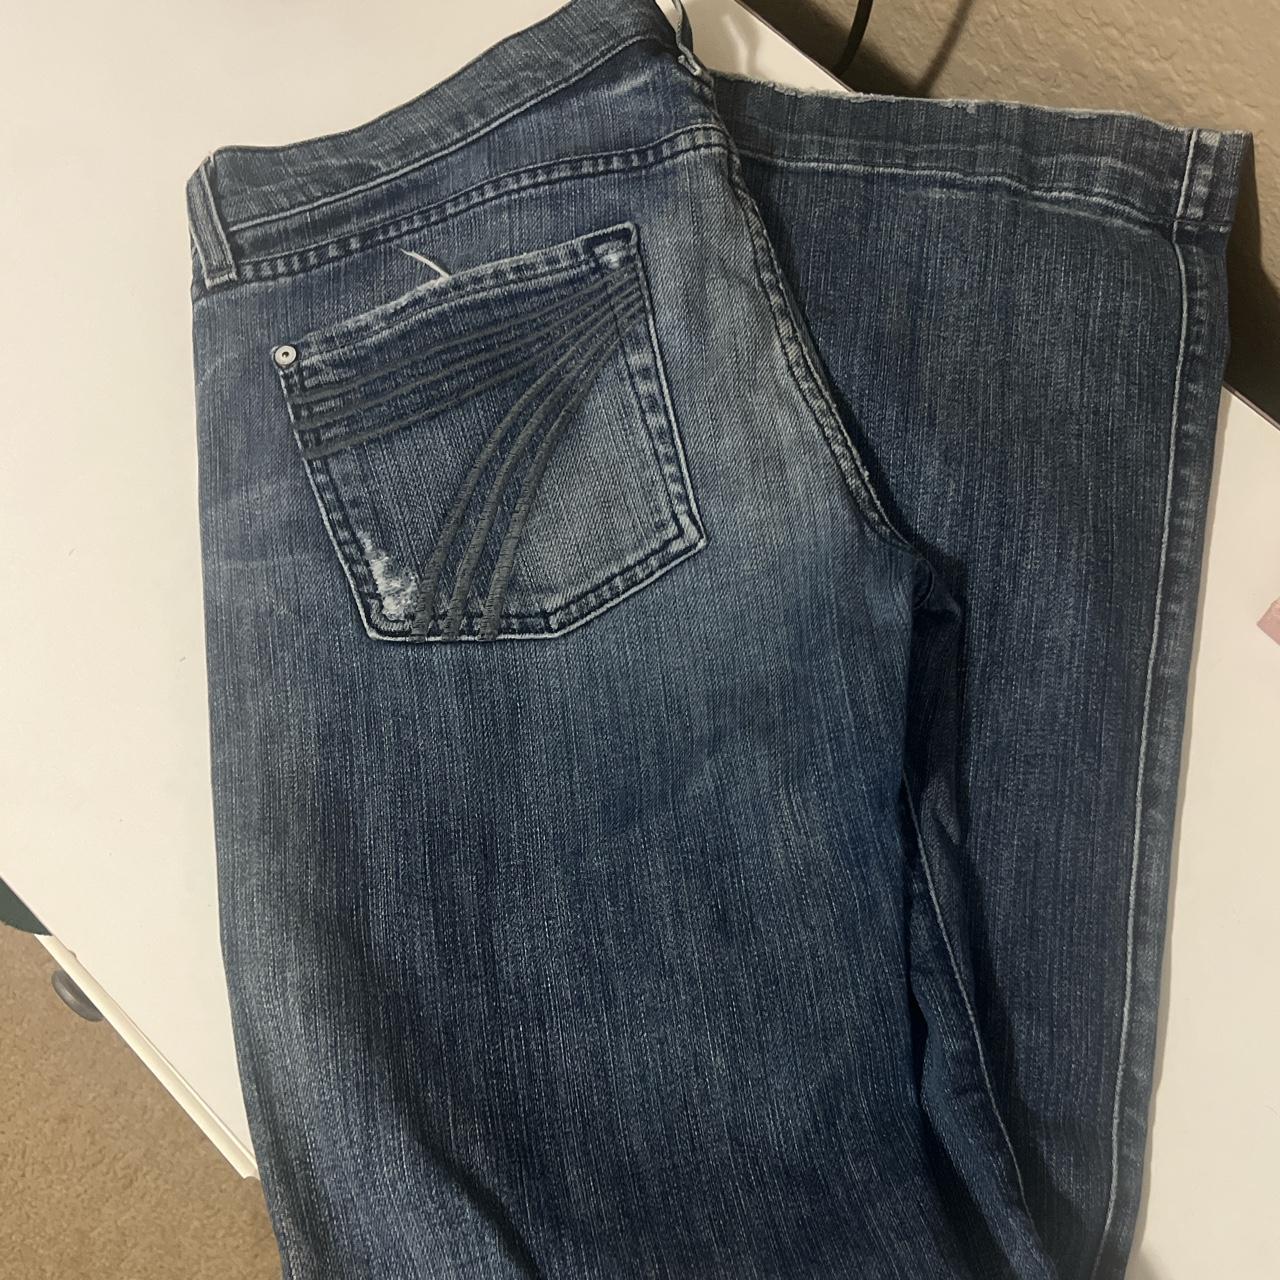 7FAMK dojo jeans inseam 34 worn on back pocket... - Depop